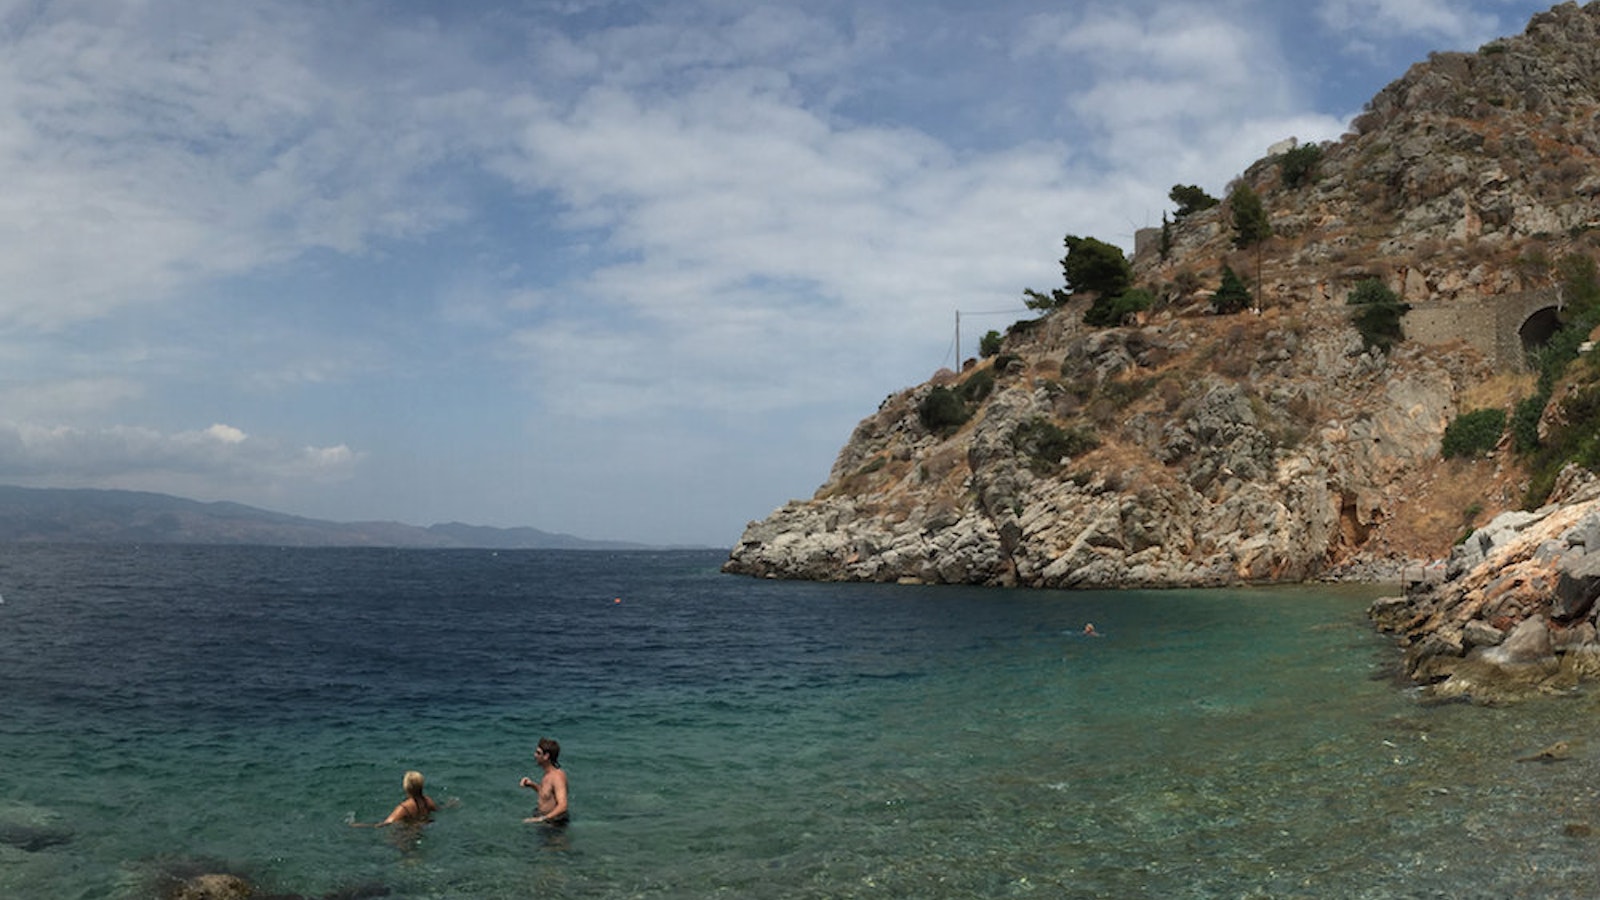 Beautiful beach in Greece